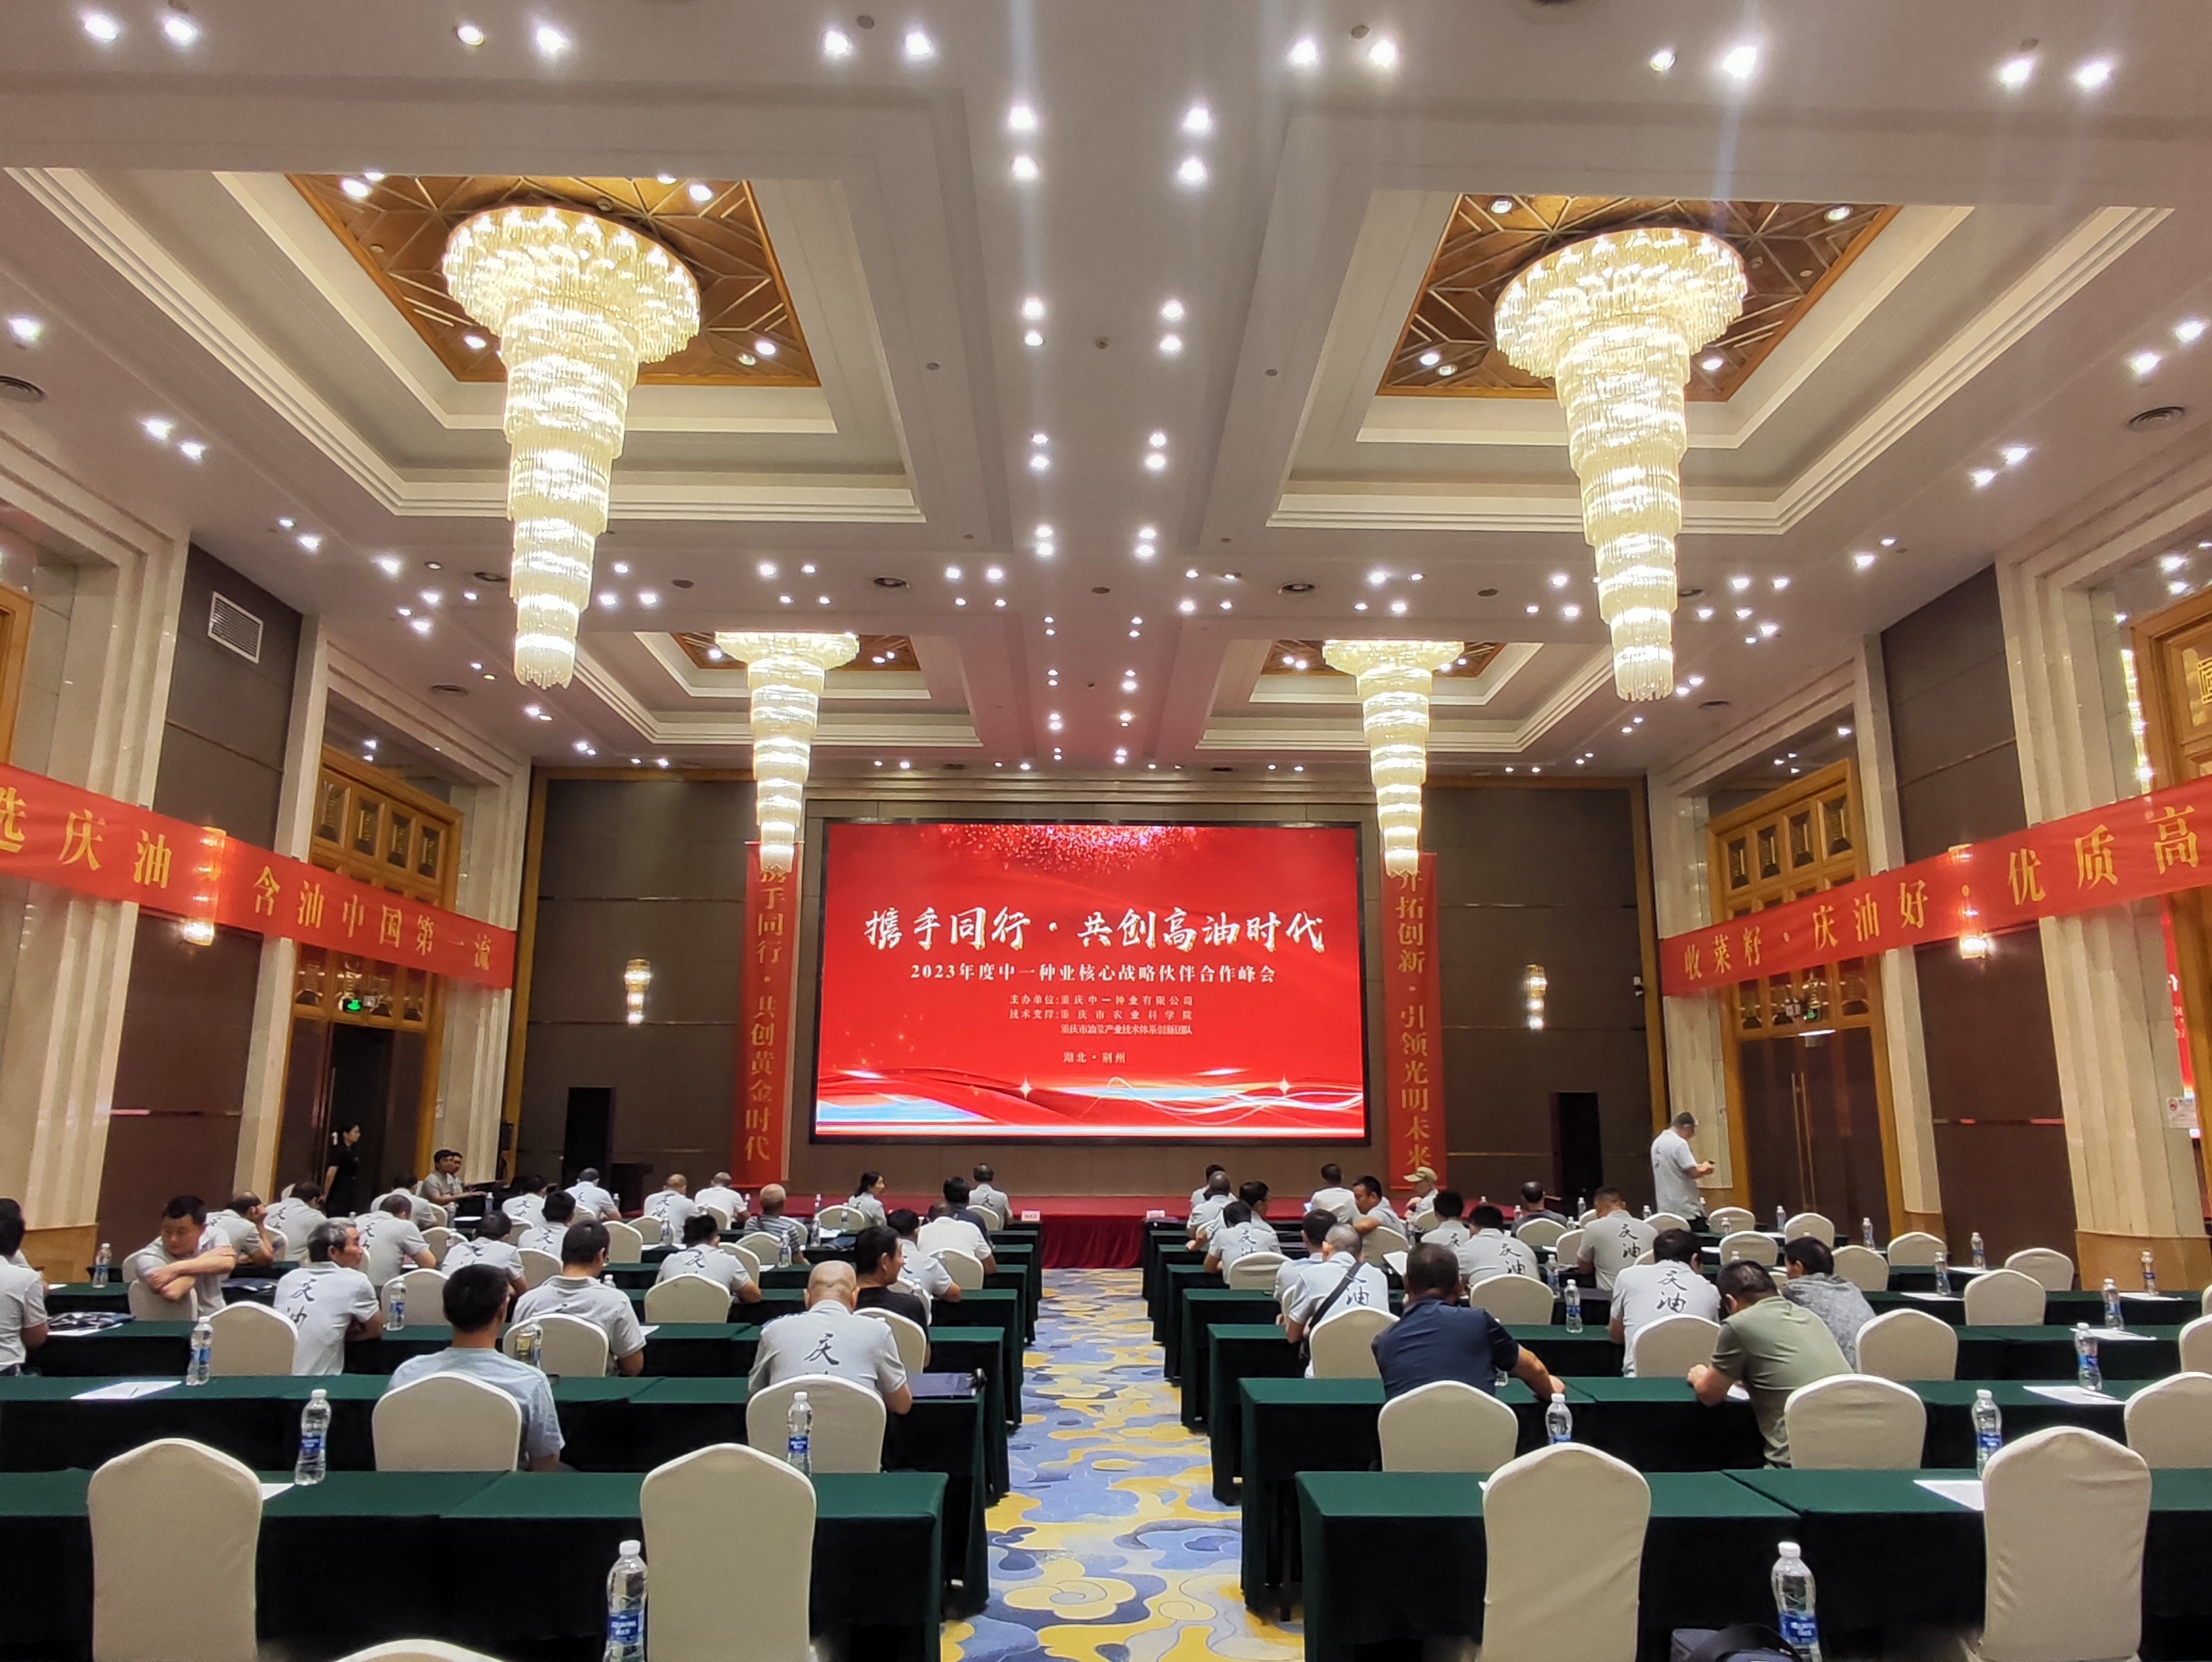 大发彩票种业核心战略伙伴合作峰会在湖北荆州圆满召开